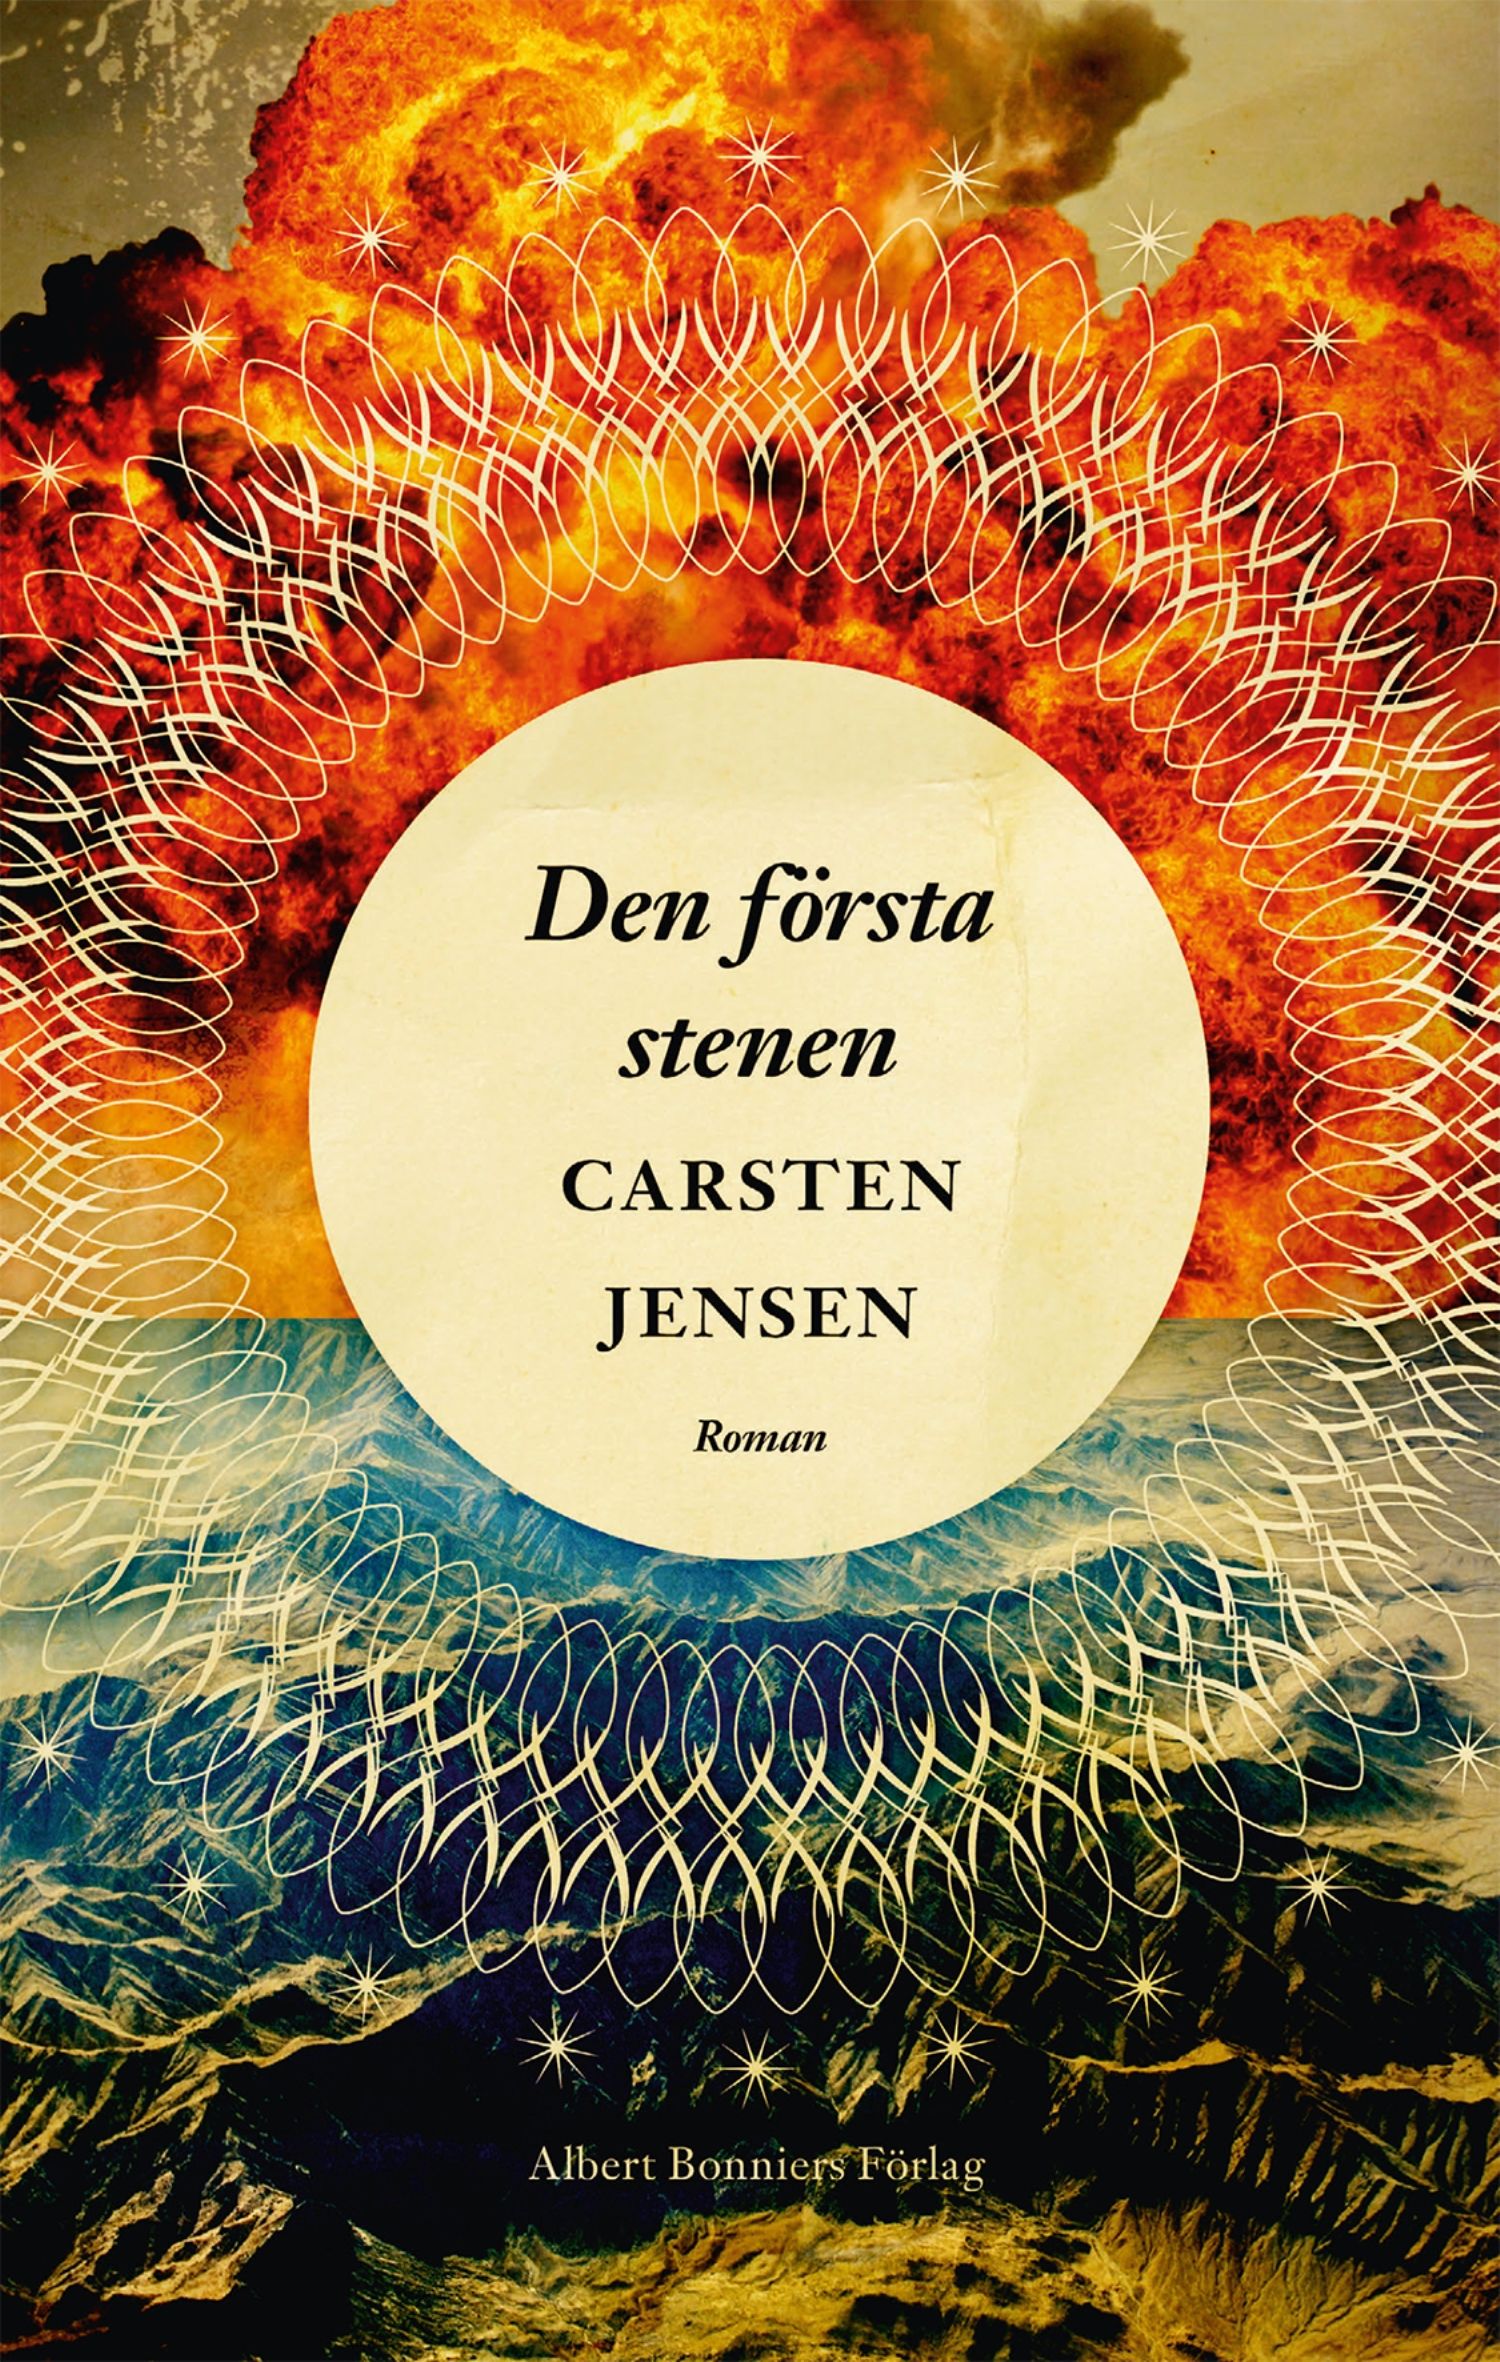 Den första stenen, e-bok av Carsten Jensen